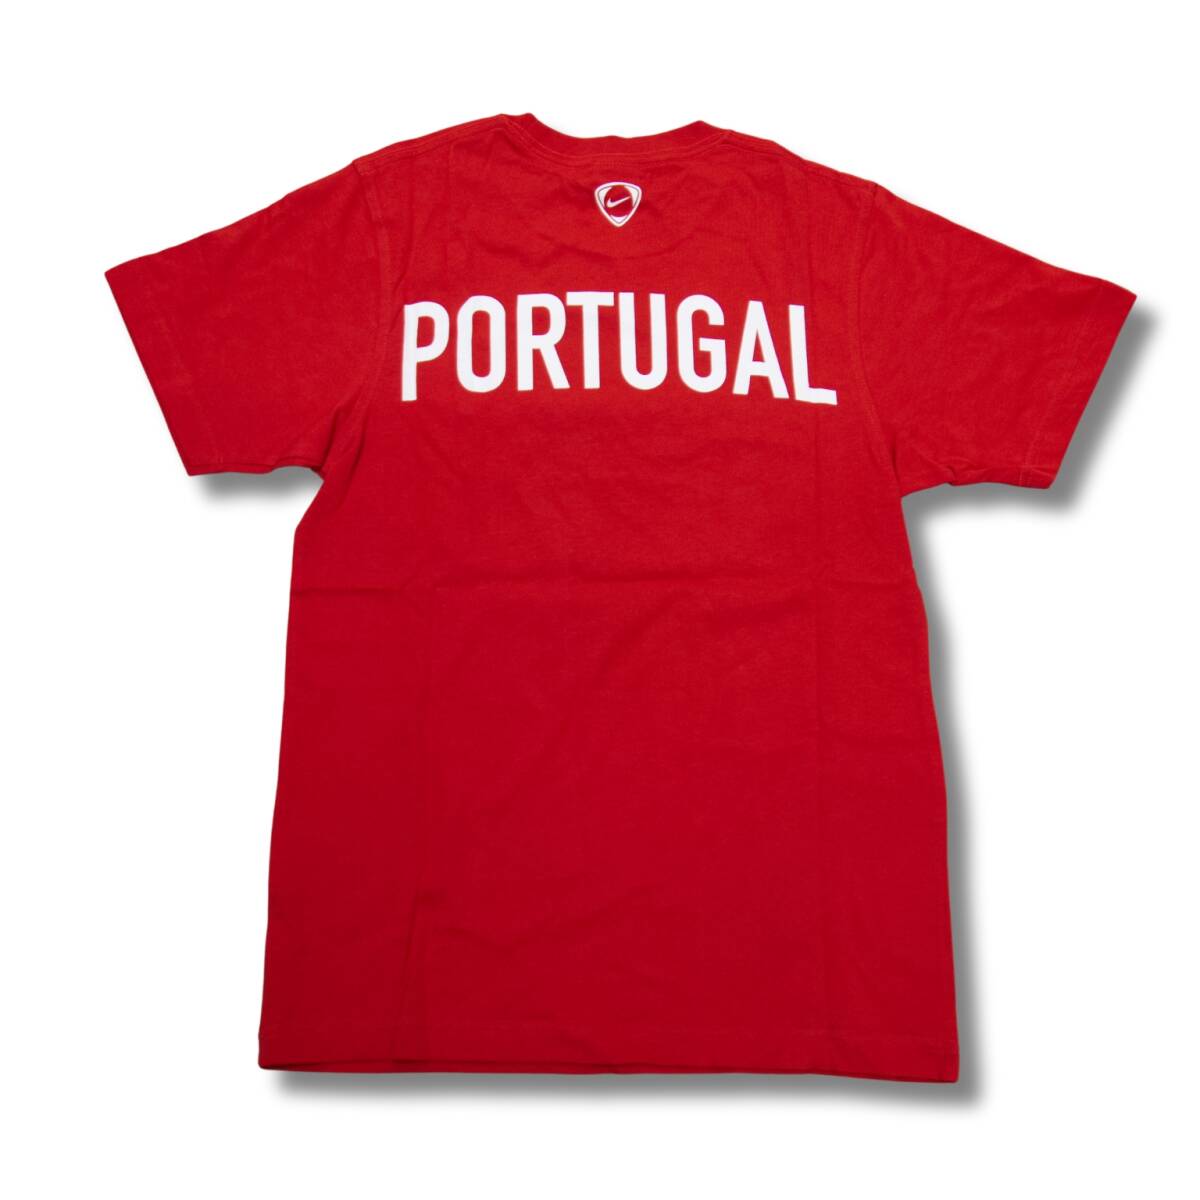 即決☆ナイキ ポルトガル代表Tシャツ US Lサイズ 日本サイズ XL 送料無料 半袖 ナイキジャパン国内正規品 NIKE_画像2